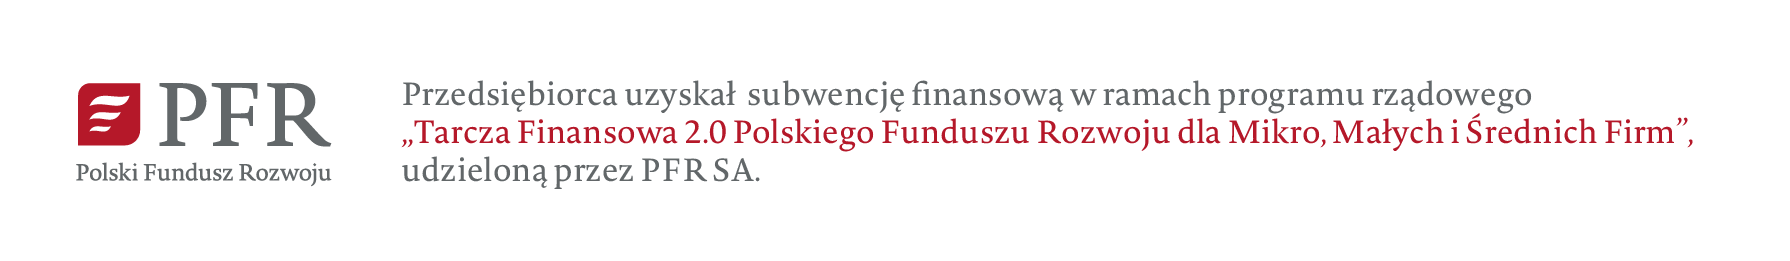 Przedsiębiorca uzyskał subwencje w ramach programu rządowego "tarcza Finansowa 2.0 Polskiego Funduszu Rozwoju dla Mikro, Małych i Średnich firm" udzieloną przez PFR S.A.